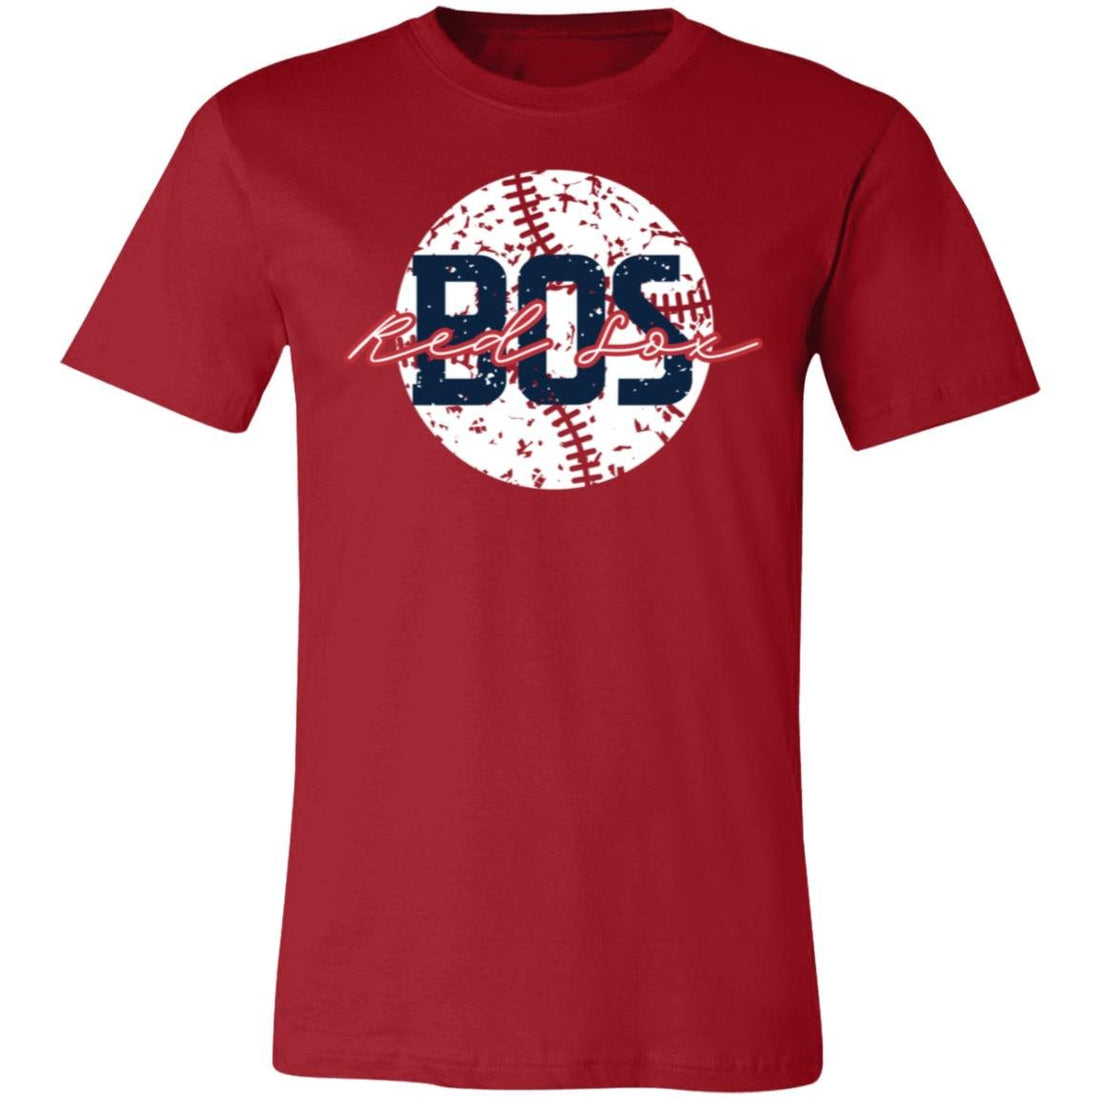 BOS Sox T-Shirt - T-Shirts - Positively Sassy - BOS Sox T-Shirt